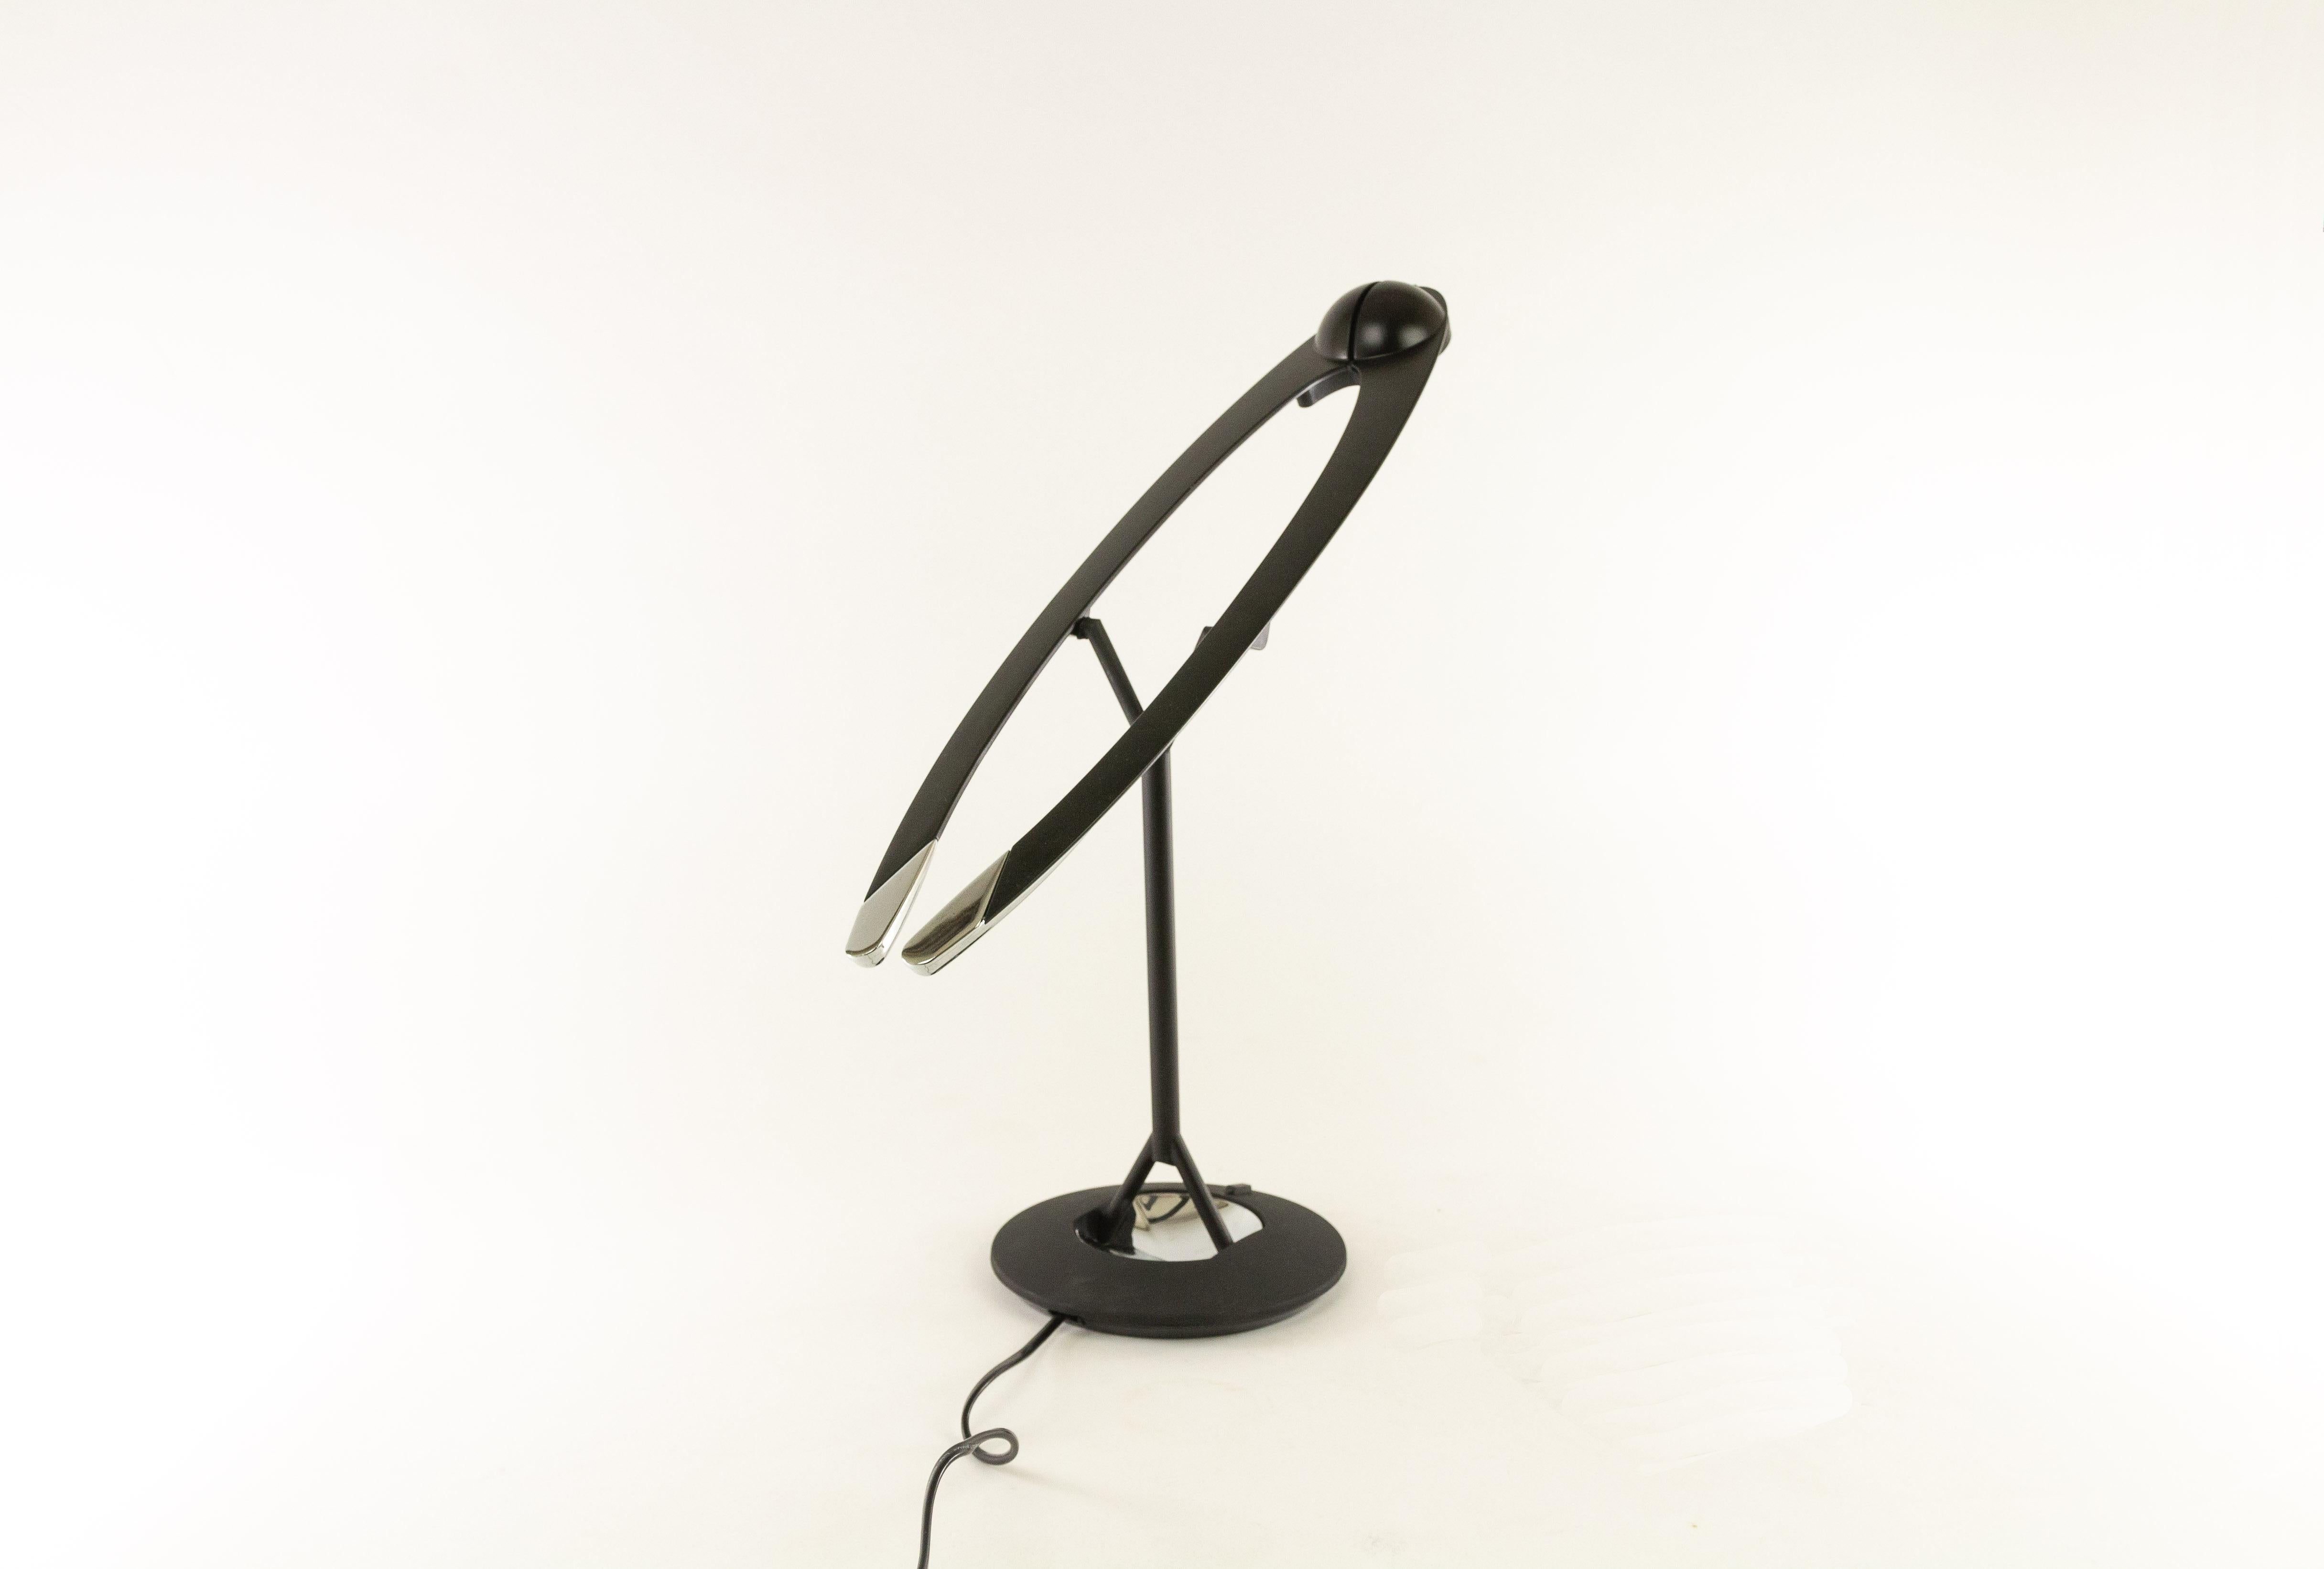 Lampe de table halogène, Malia, conçue par Bruno Gecchelin et produite par Tronconi. Le design de Malia, qui sous certains angles rappelle un peu un oiseau ou un avion, donne à la lampe une touche très dynamique.

La lampe est facile à déplacer